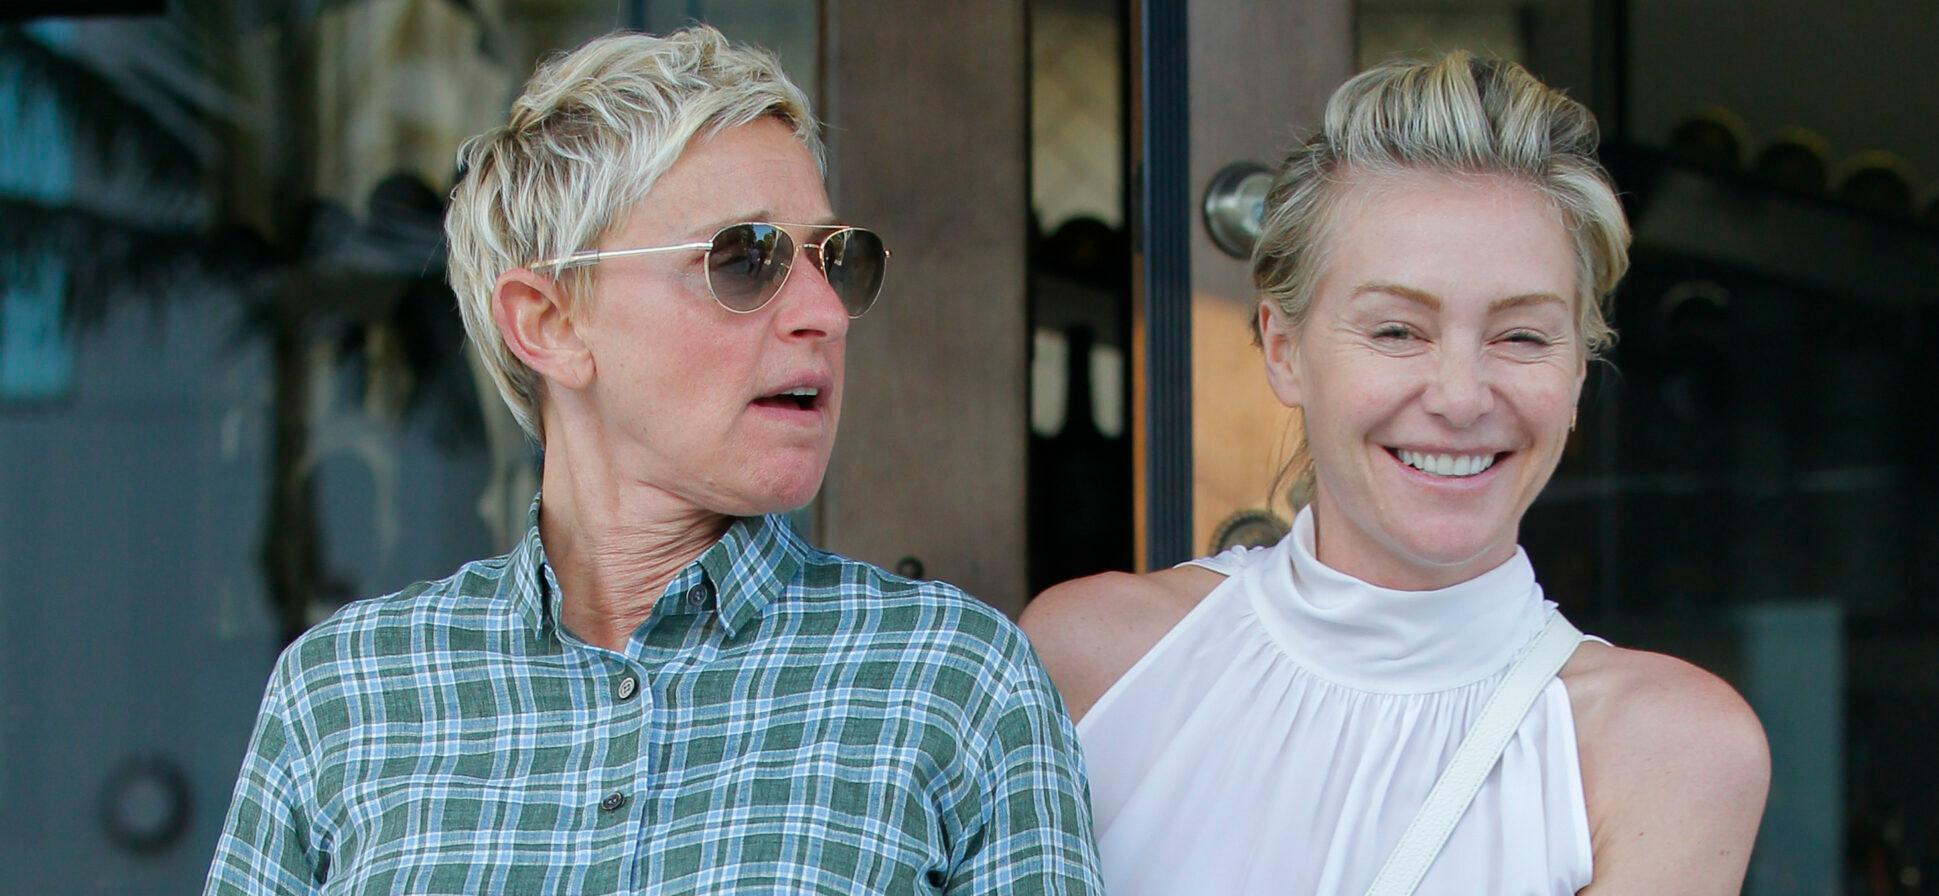 Ellen DeGeneres and Portia de Rossi after dinner date in West Hollywood